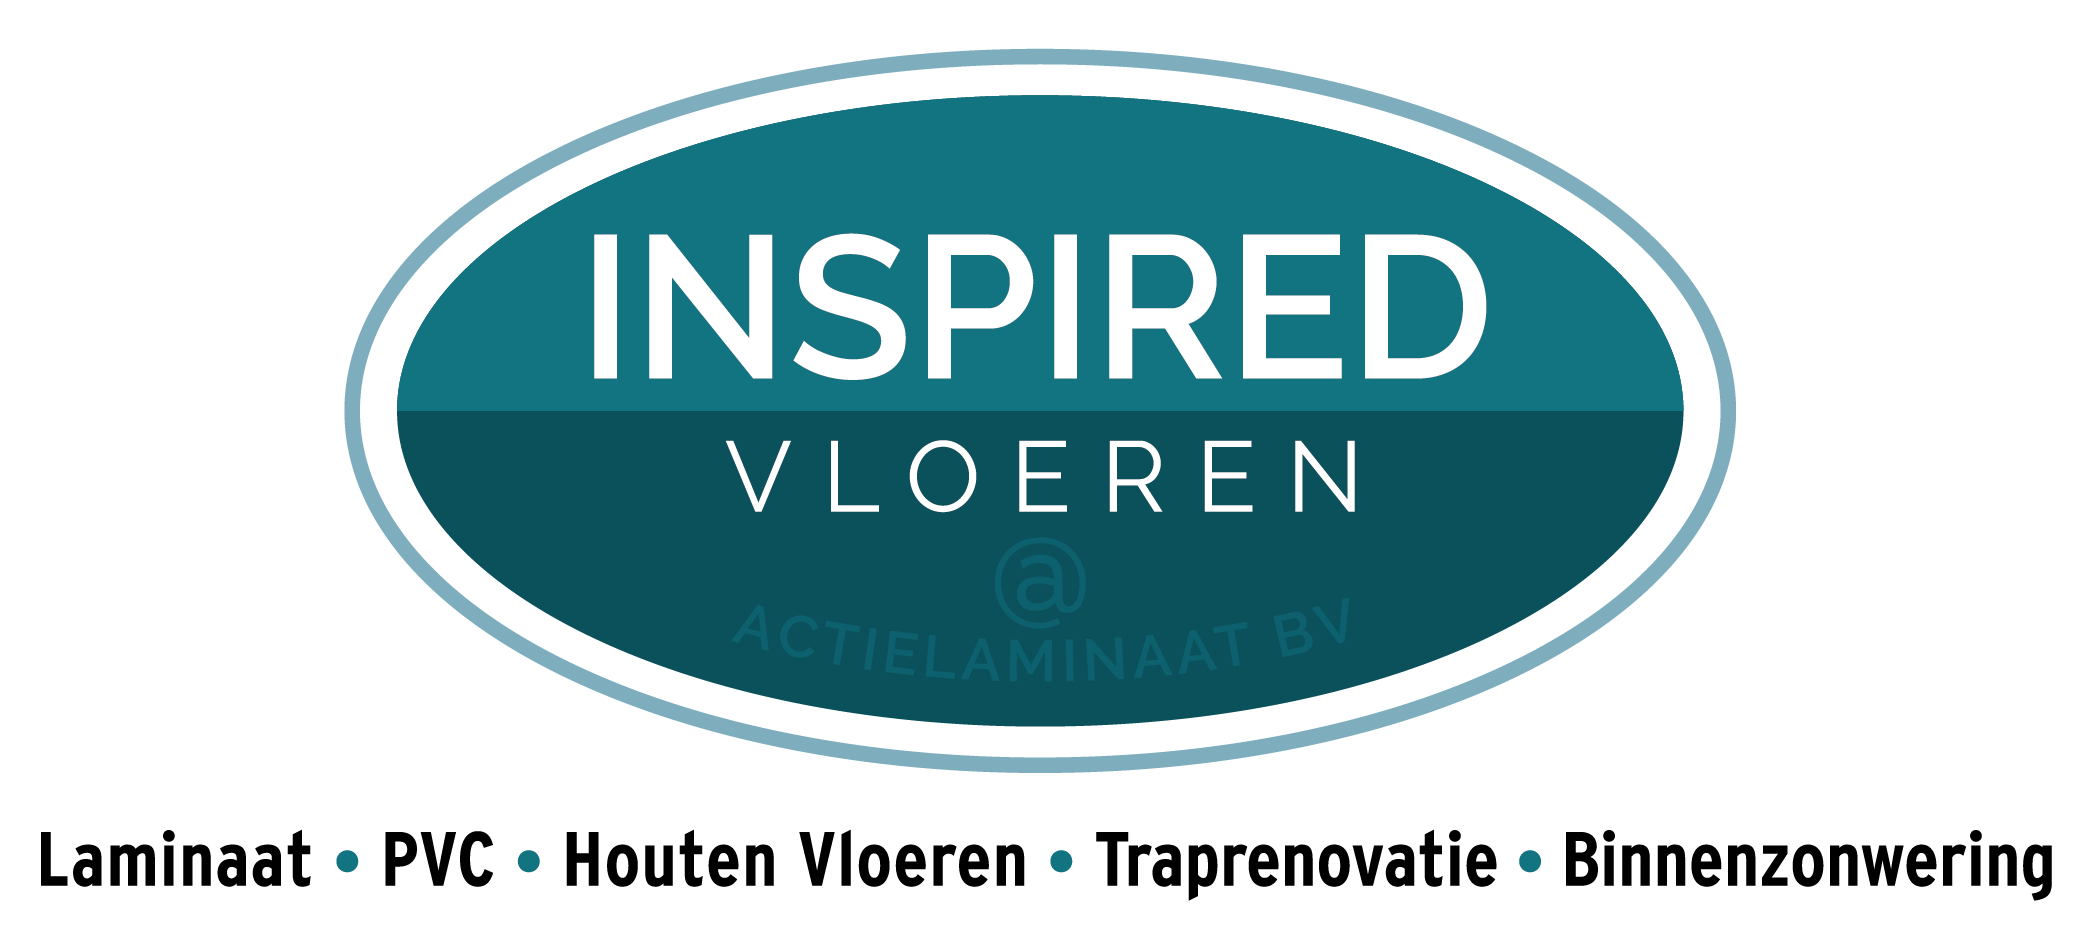 Inspired Vloeren @Actielaminaat BV Eindhoven